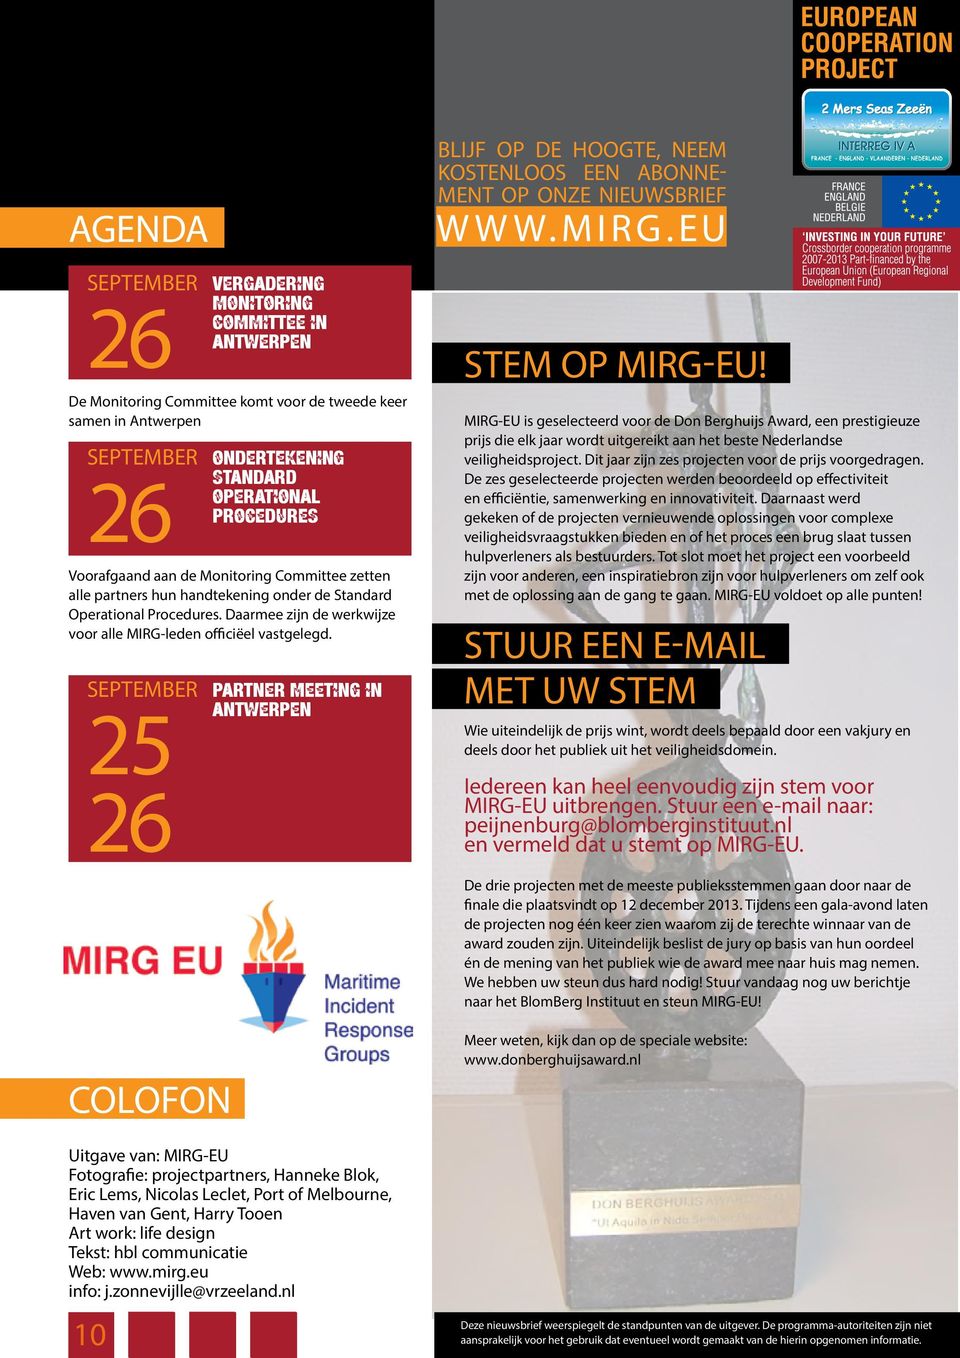 september 25 26 standard operational procedures partner meeting in antwerpen blijf op de hoogte, neem kostenloos een abonnement op onze nieuwsbrief www.mirg.eu Stem op MIRG-EU!